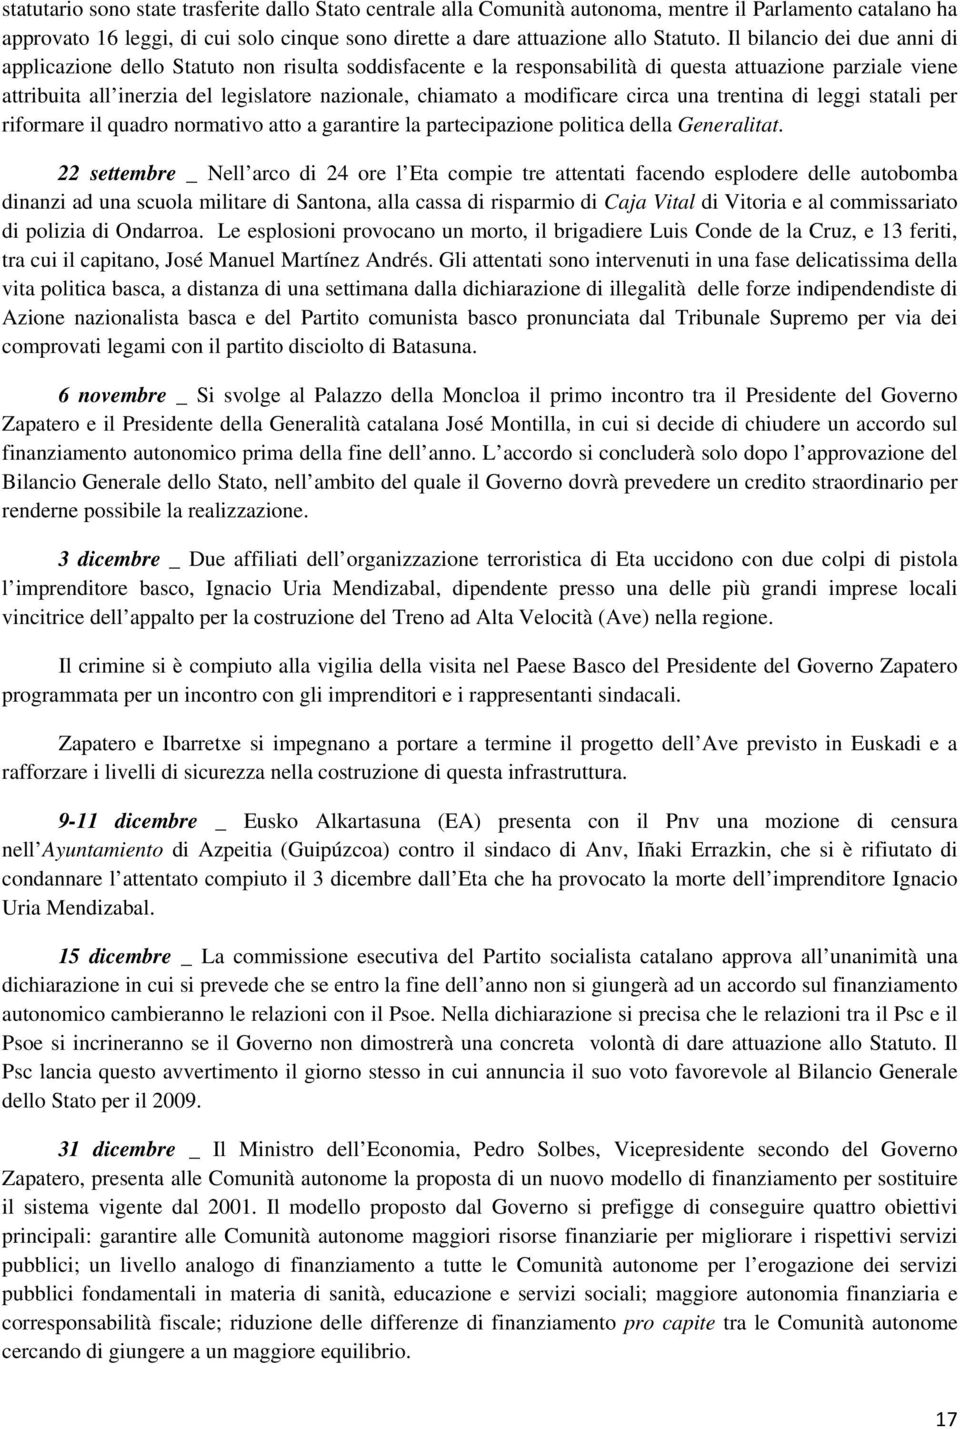 modificare circa una trentina di leggi statali per riformare il quadro normativo atto a garantire la partecipazione politica della Generalitat.